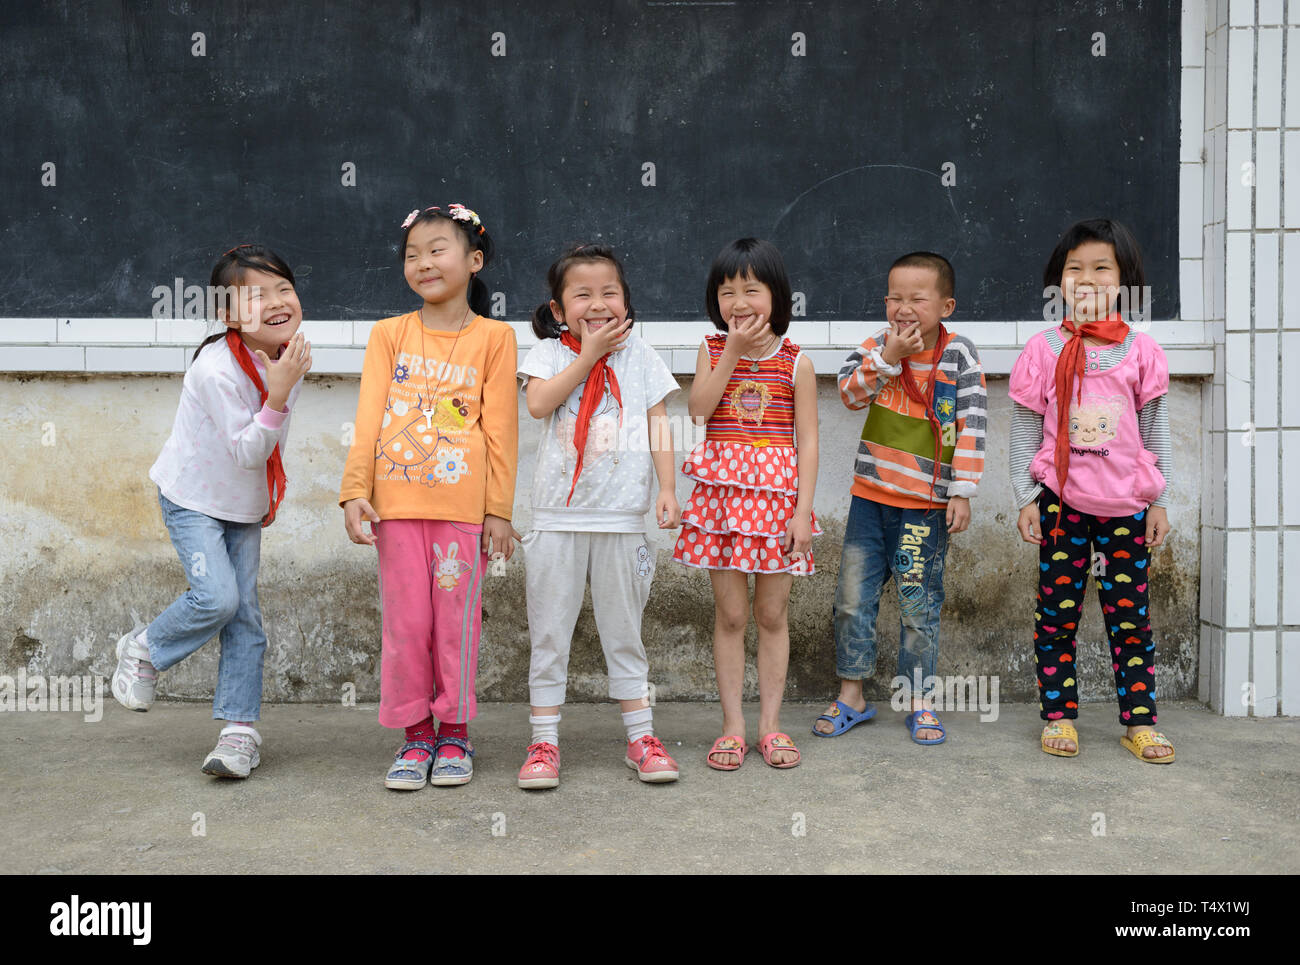 L'âge des enfants de l'école primaire s'alignent pour une photo, rire et jouer, dans la cour de l'école en milieu rural de la région de Guangxi, dans le sud de la Chine centrale. Banque D'Images